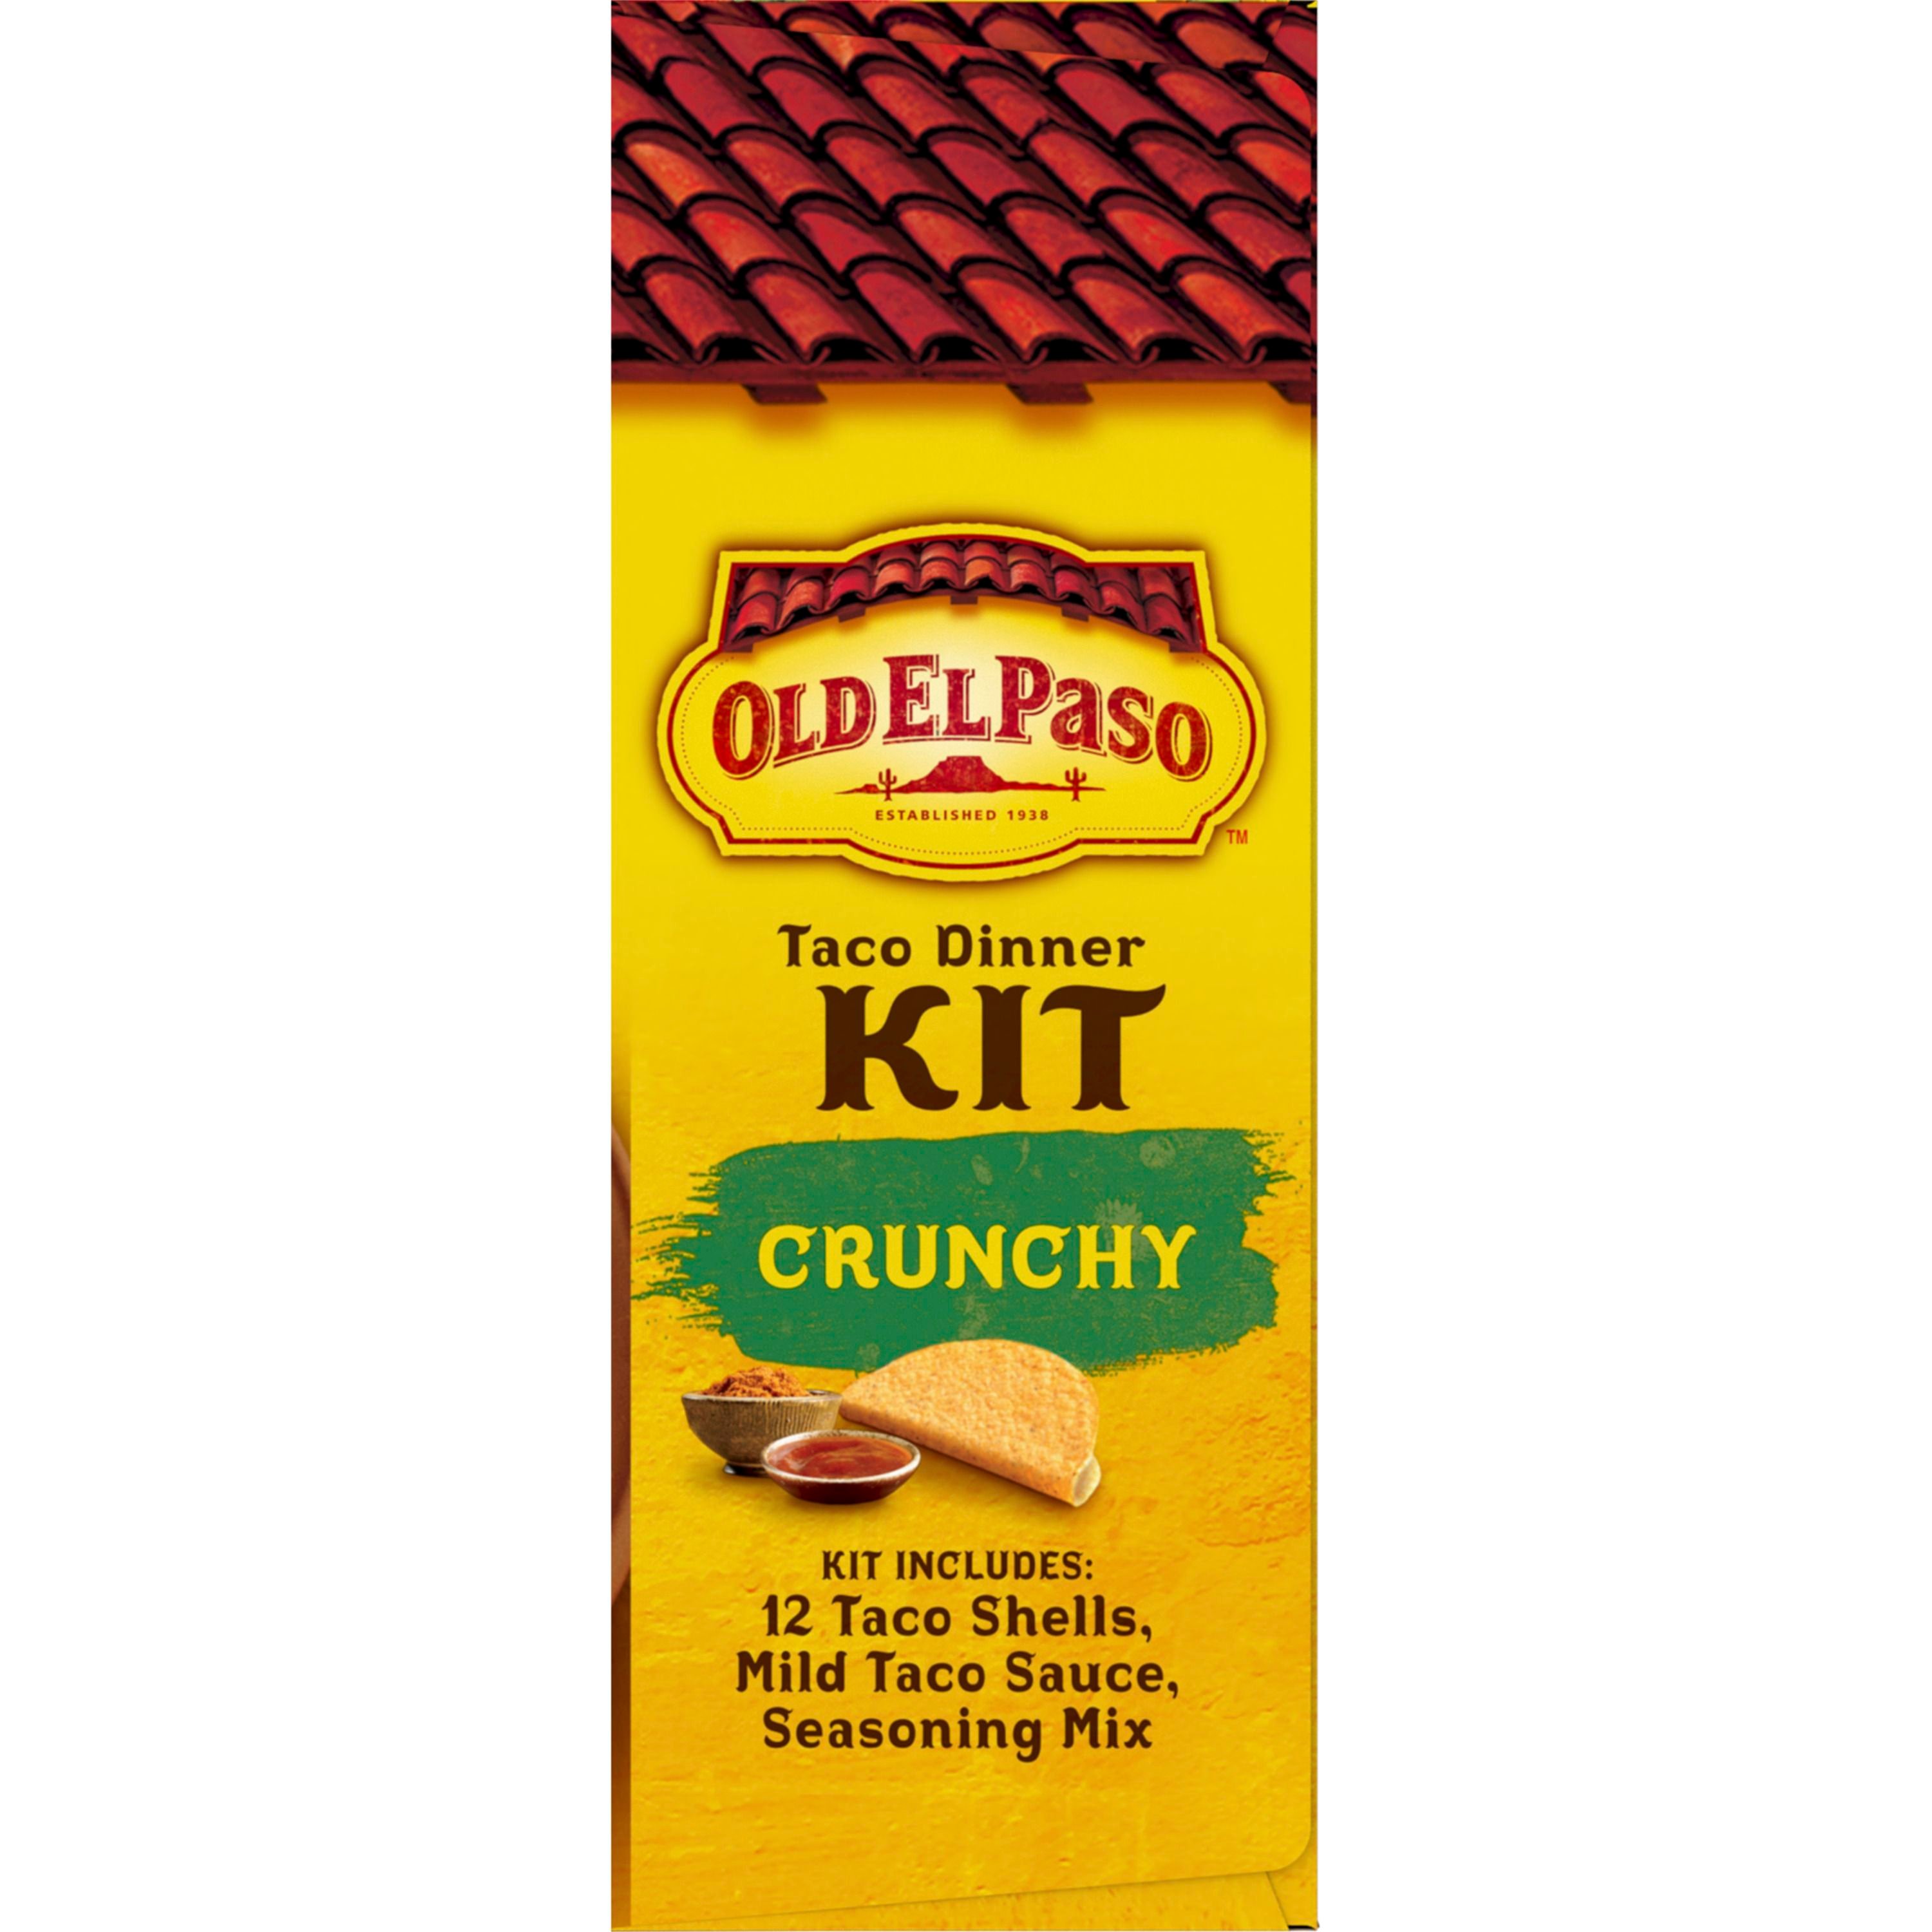 Old El Paso Taco Dinner Kit, Crunchy, Easy Meal Prep, 8.8 oz.